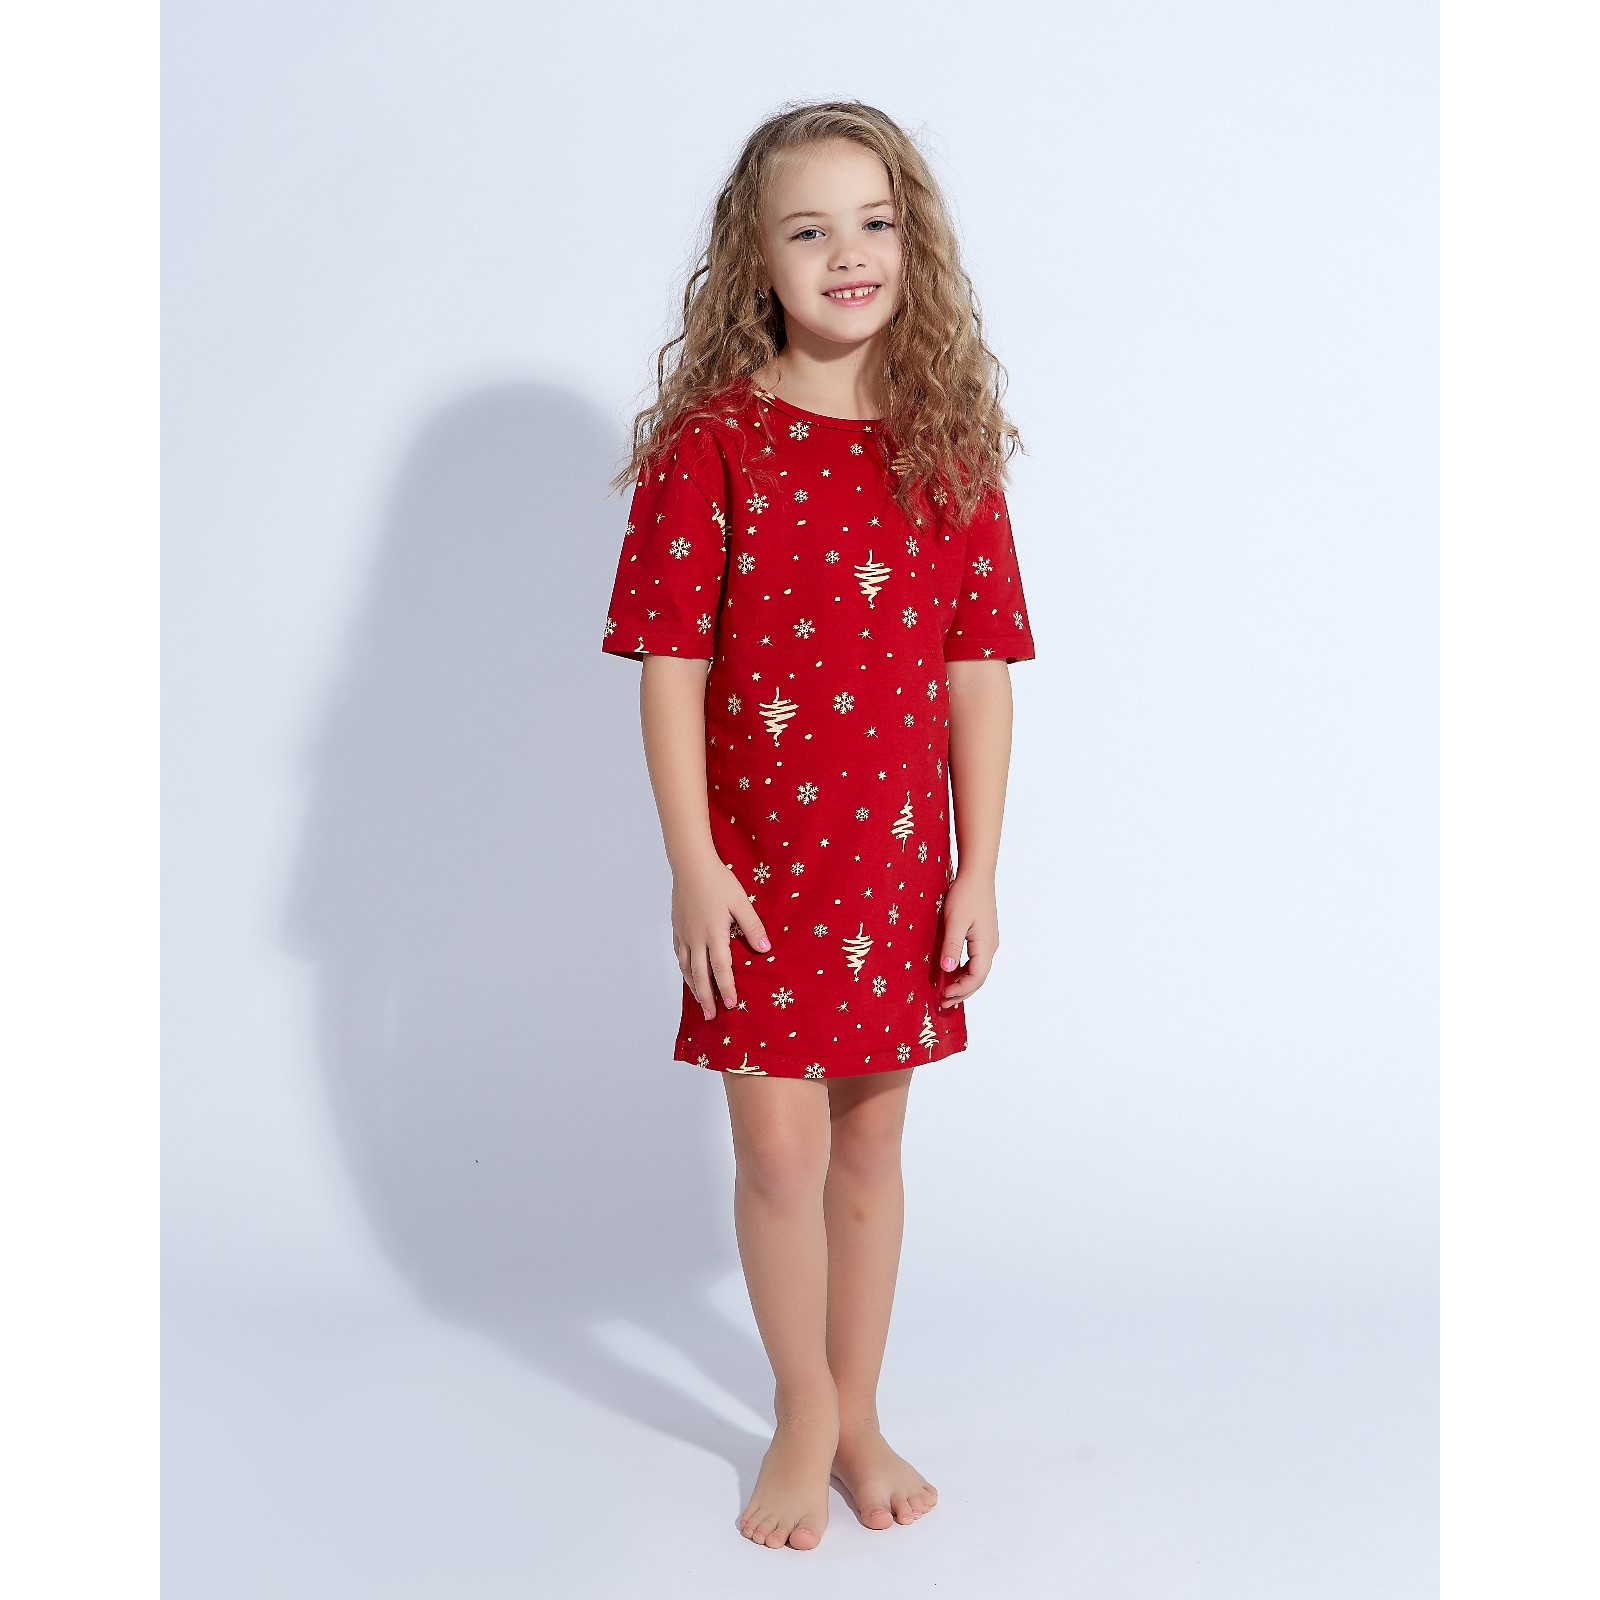 Детская ночная сорочка Ёлки цвет: Красный (3 года), размер 3 года